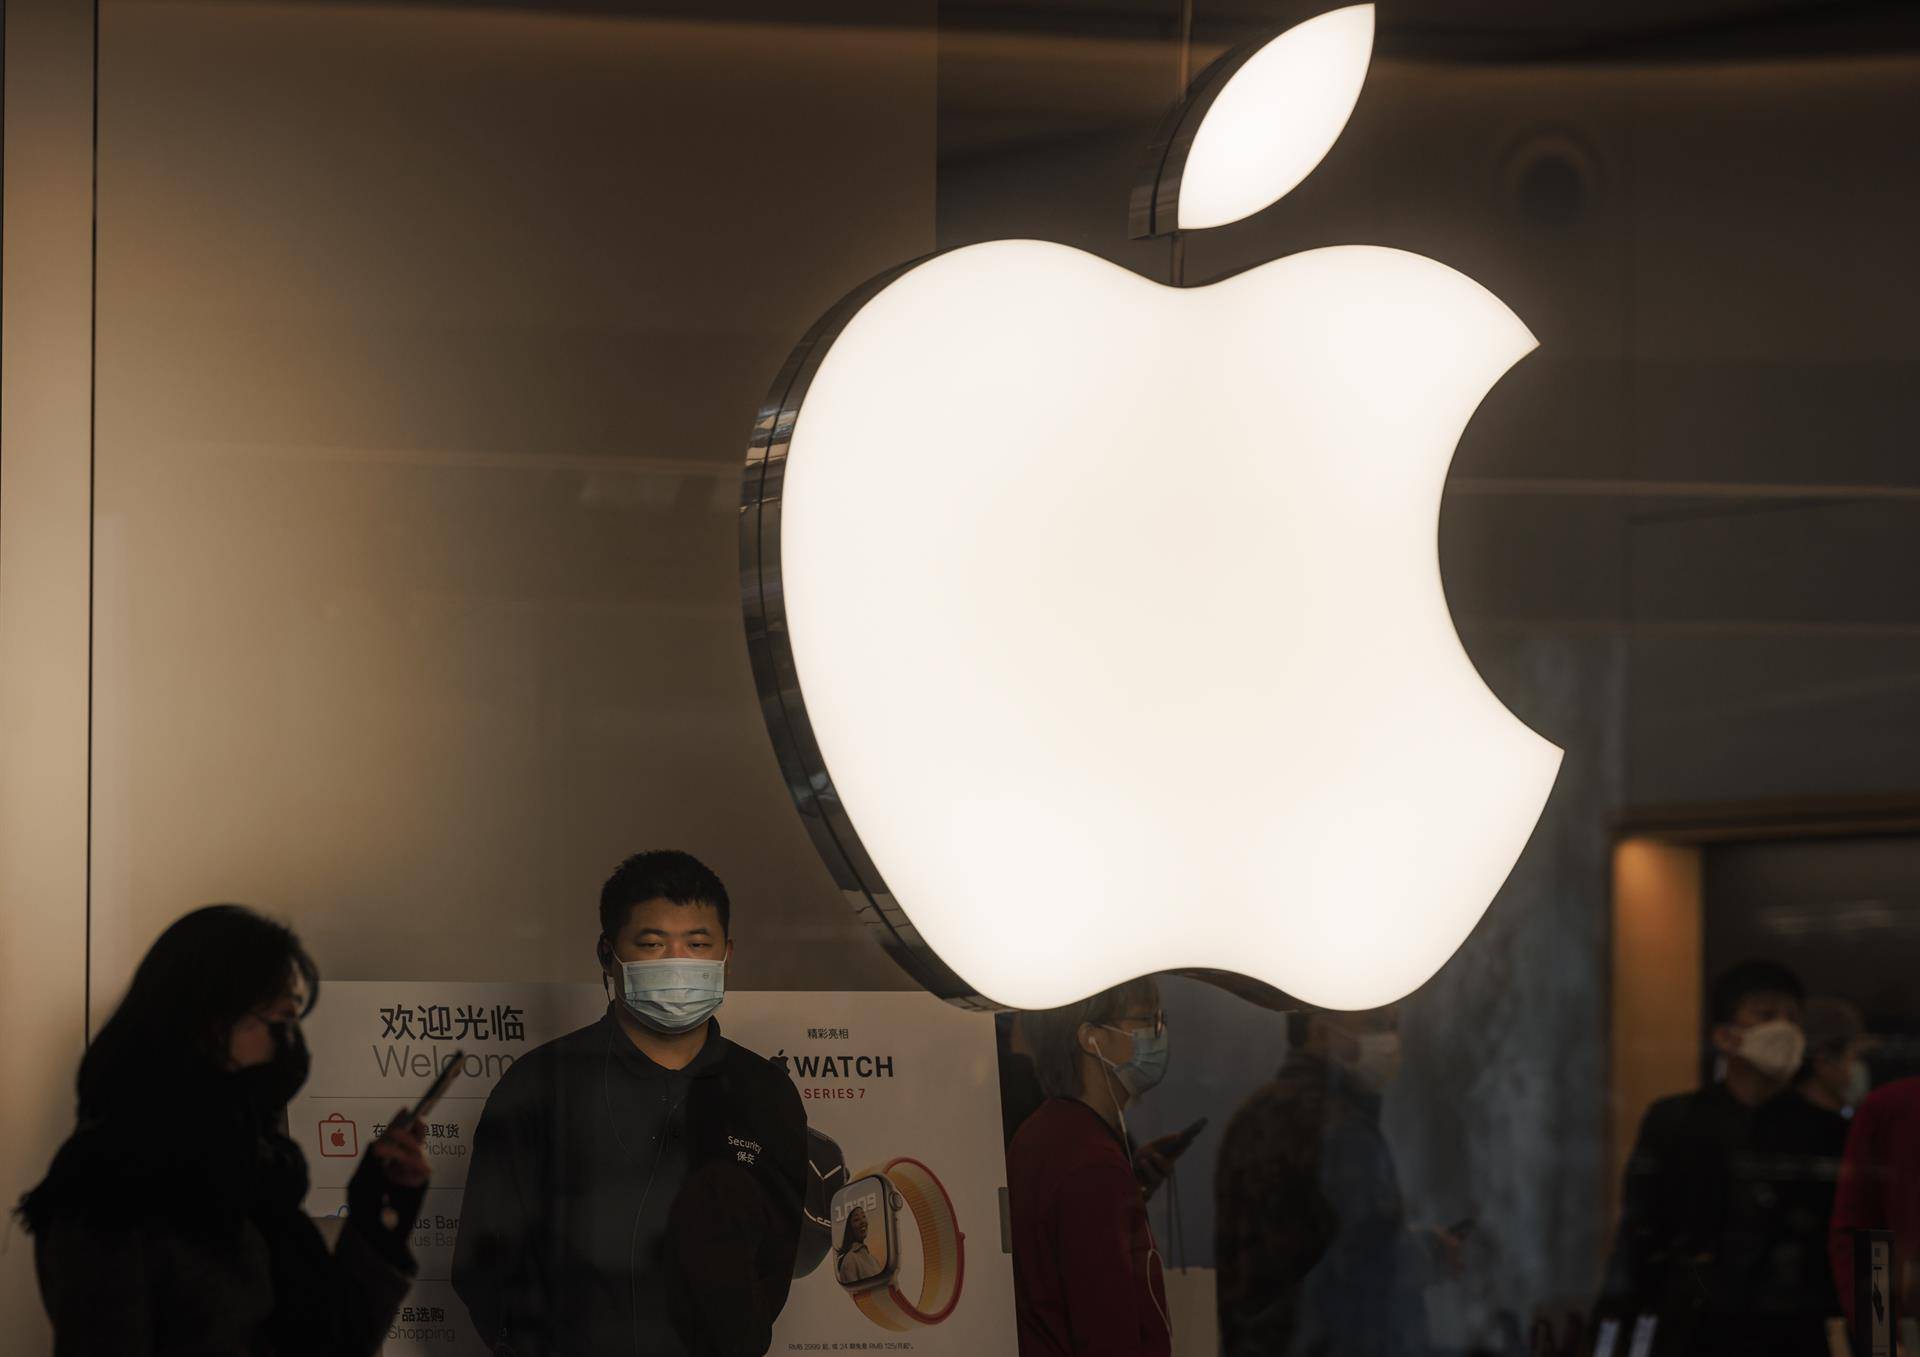 Los nuevos confinamientos en China pueden afectar a mayor fábrica mundial iPhone